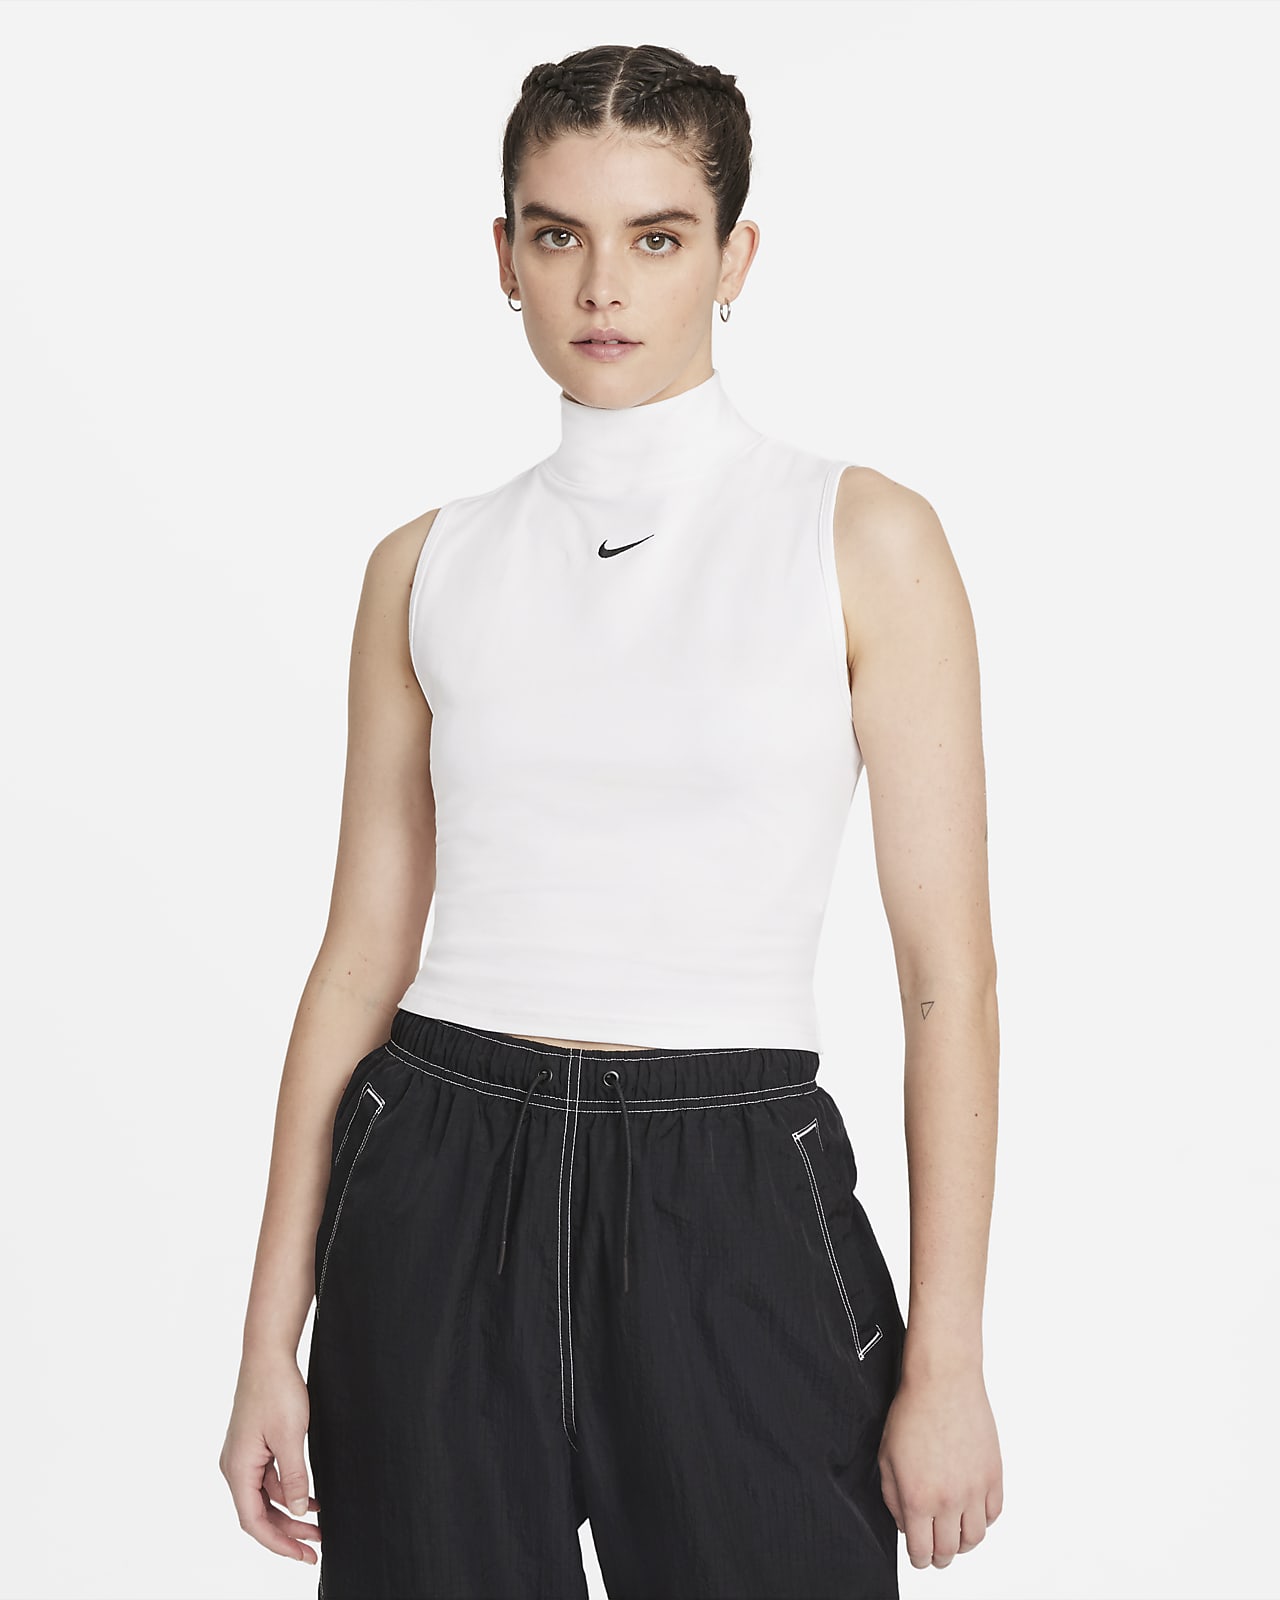 delicacy gene limit Nike Sportswear Collection Essentials ermeløs overdel med høy hals til dame.  Nike NO